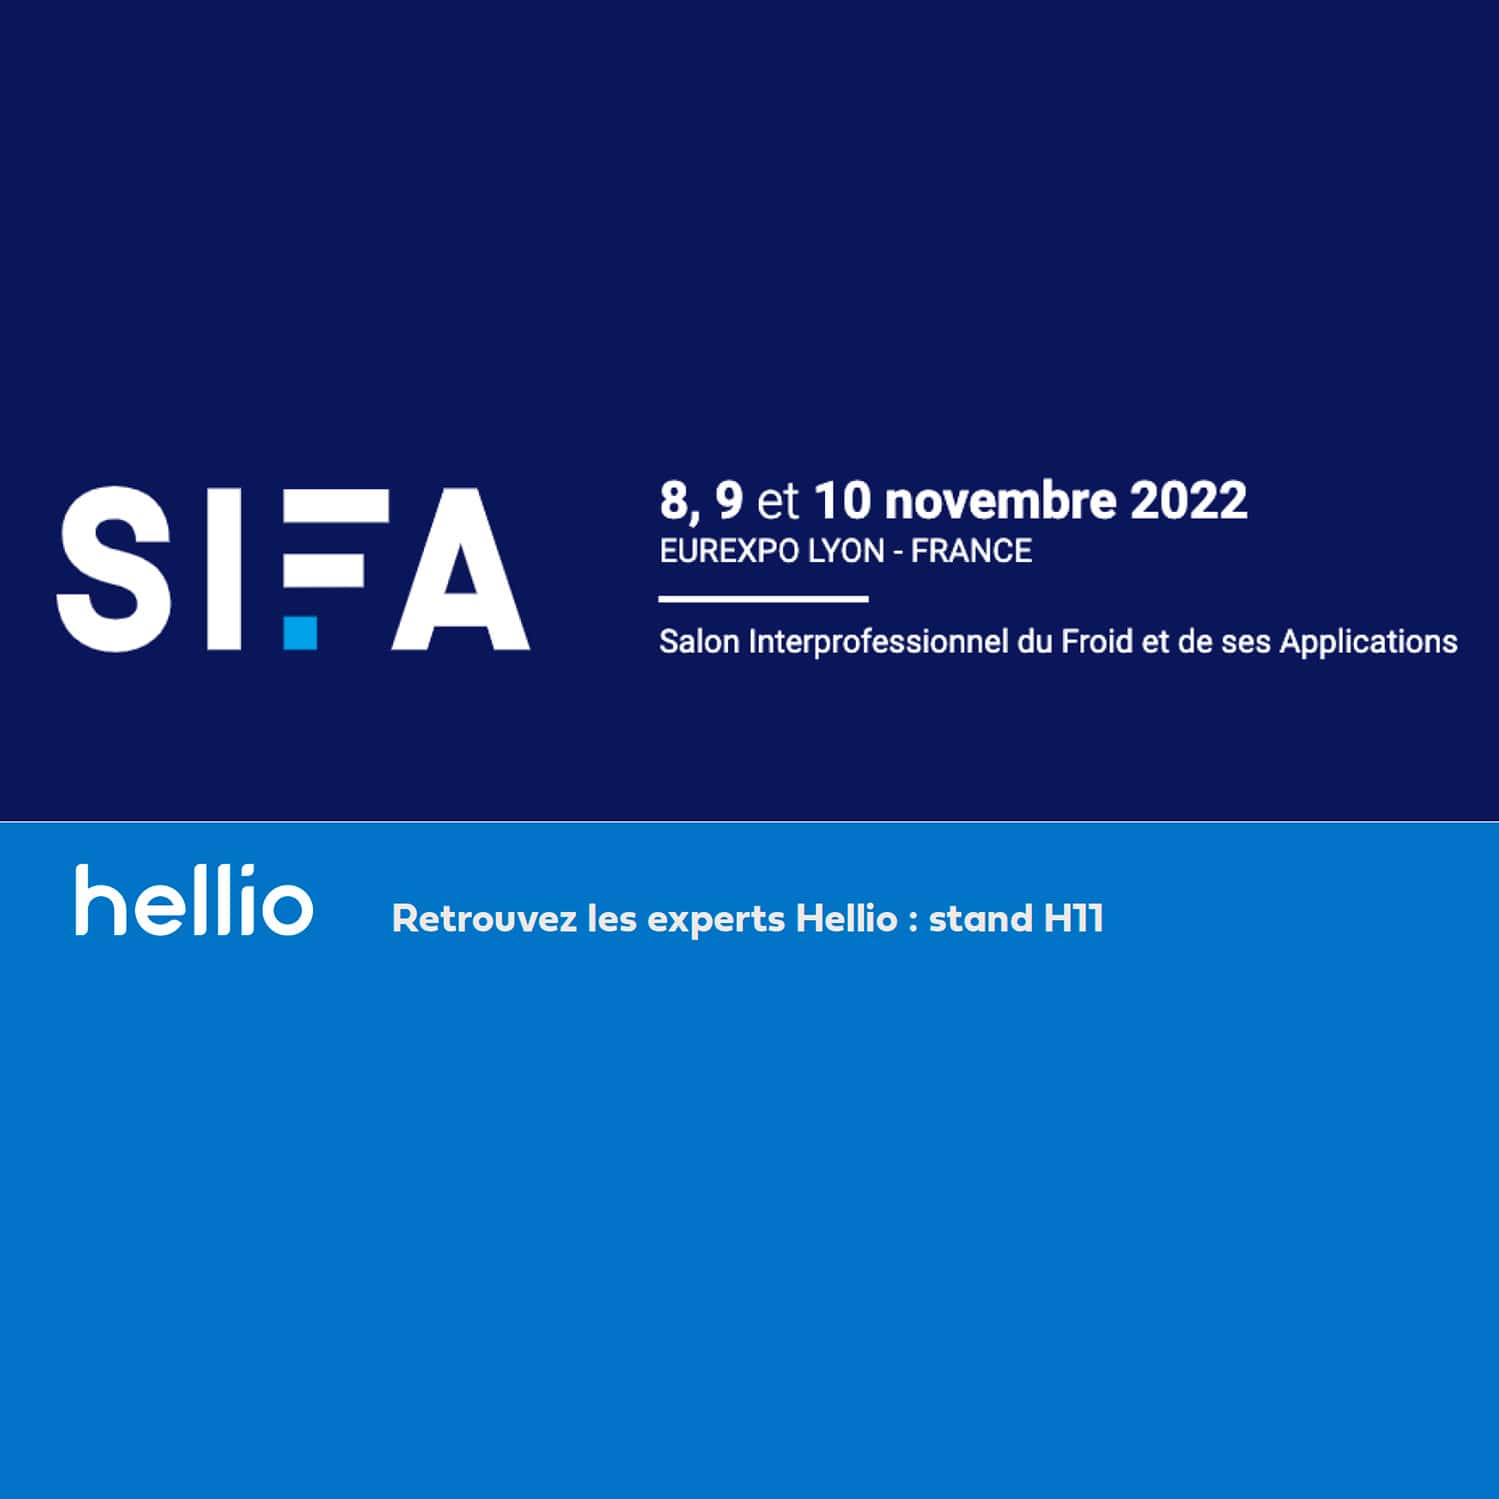 sifa-hellio-novembre-2022